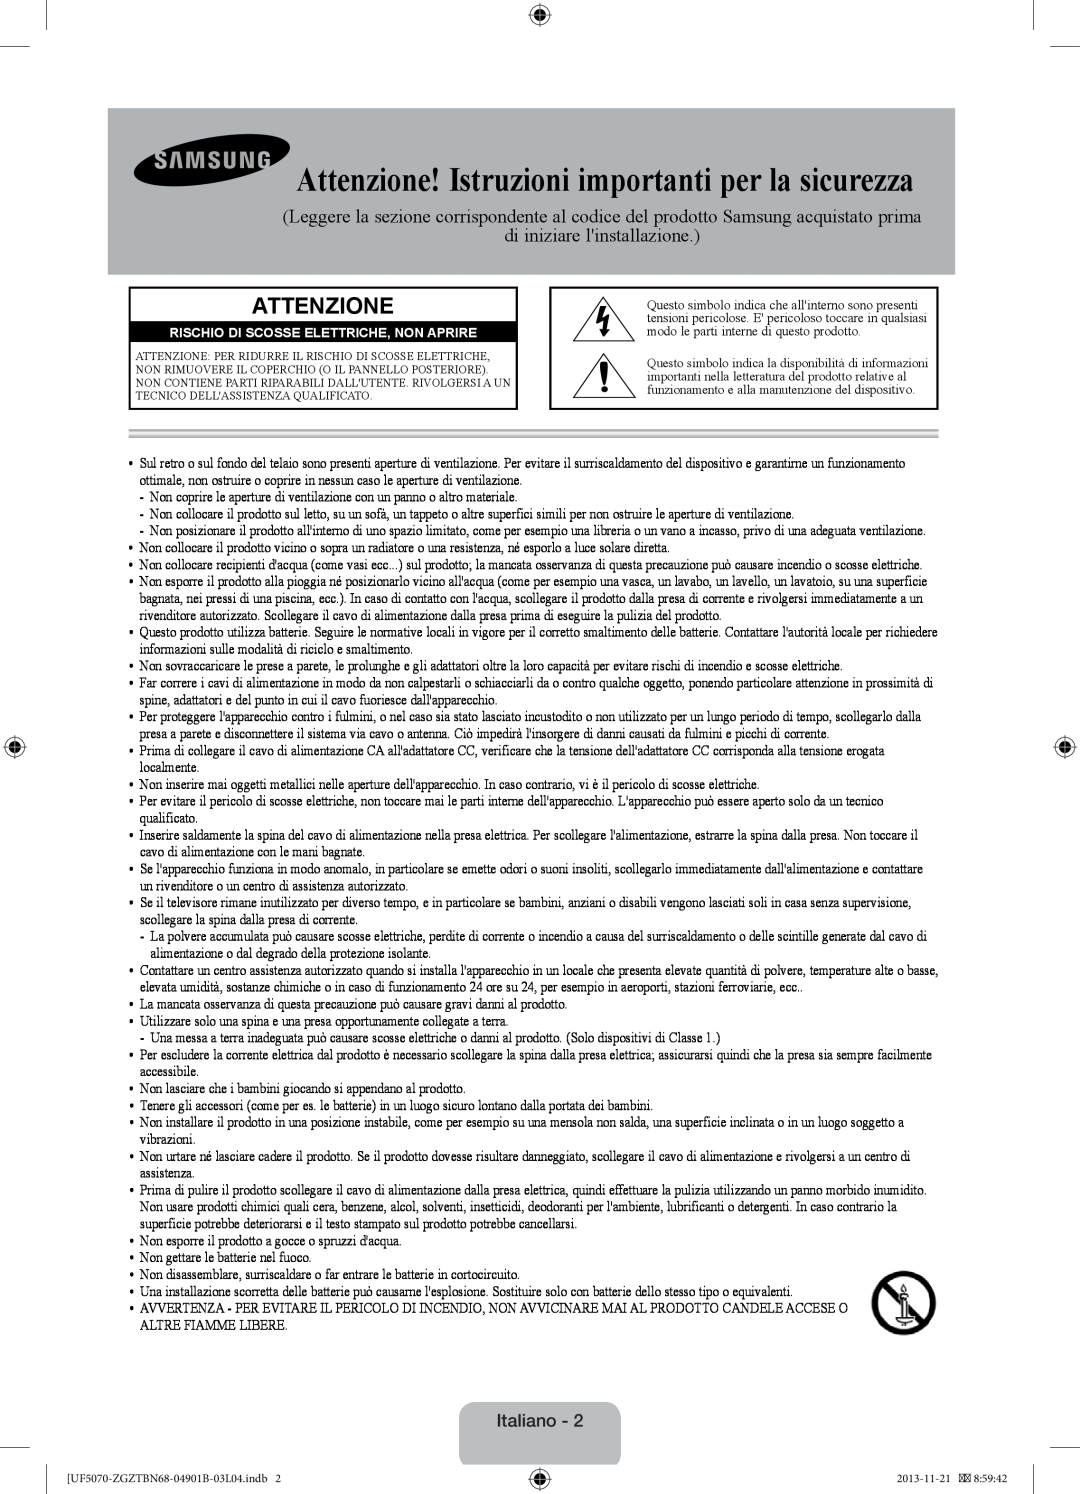 Samsung UE46F5000AWXZF manual Attenzione! Istruzioni importanti per la sicurezza, di iniziare linstallazione, Italiano 